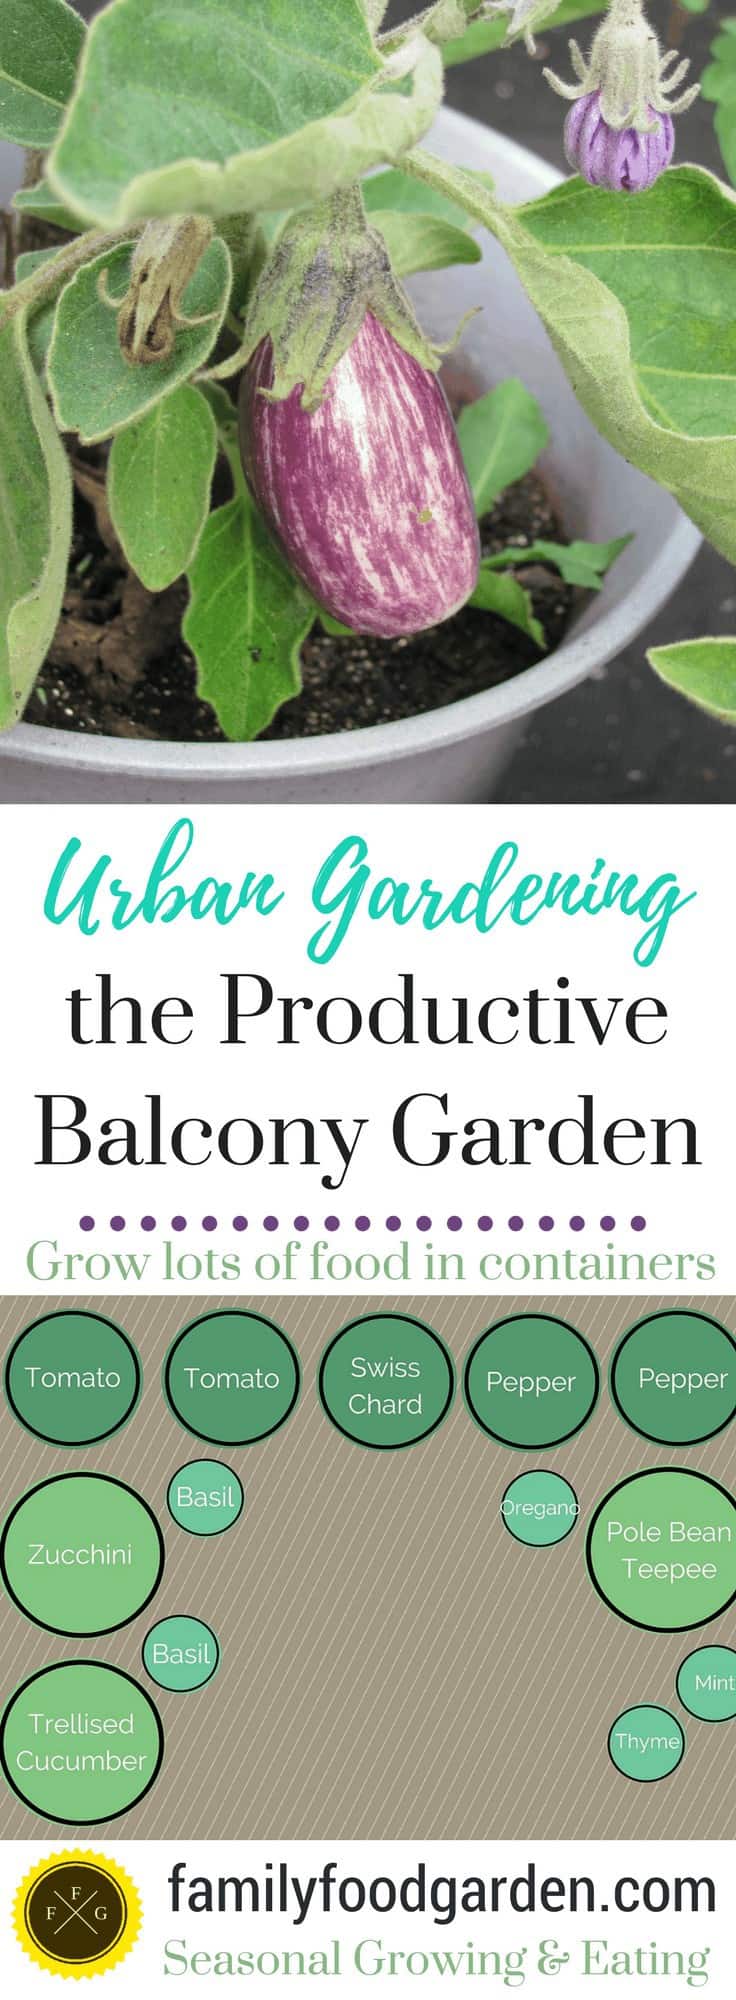 Balcony Garden tips